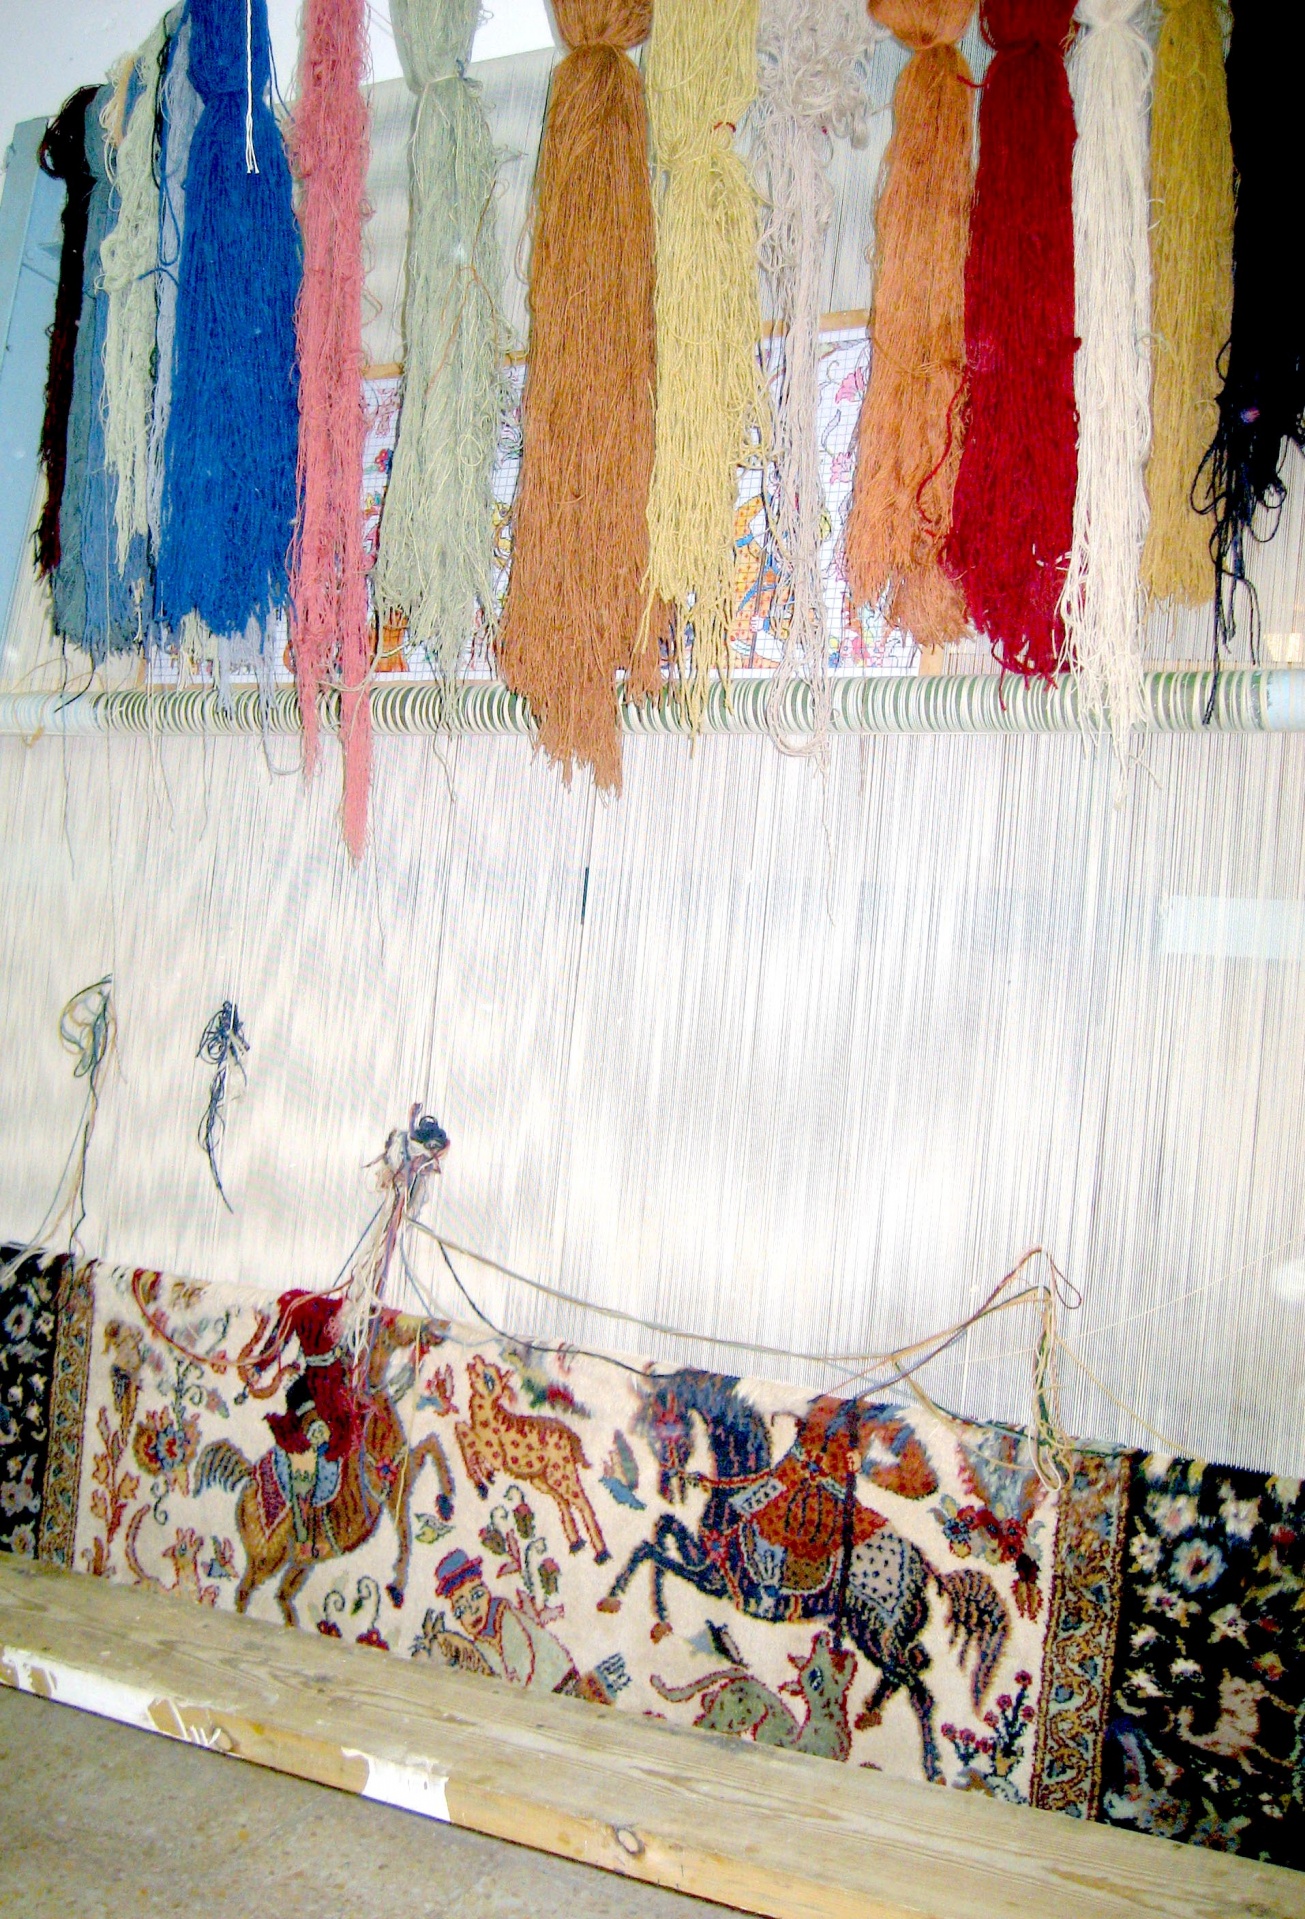 rug weaving in Egypt